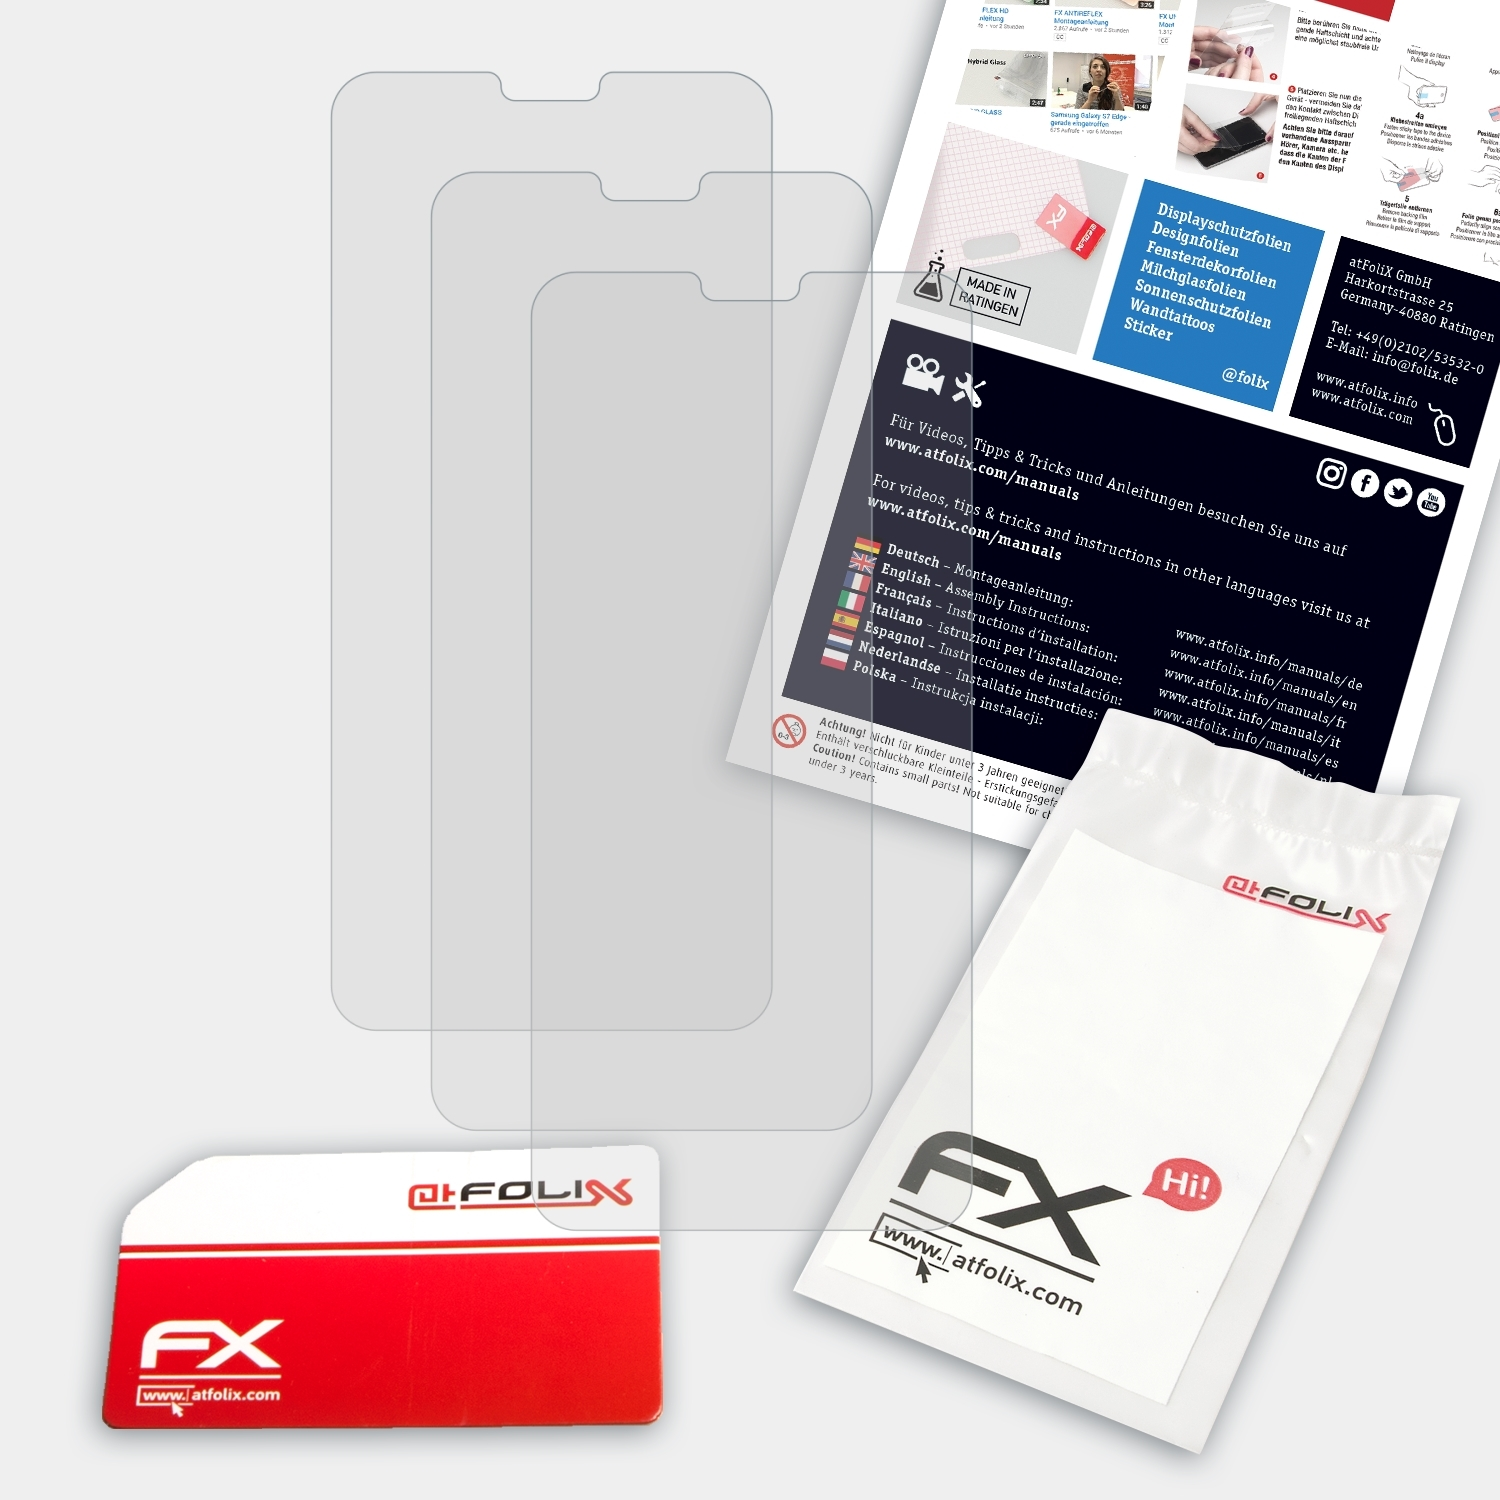 6.1 FX-Antireflex Nokia 3x Displayschutz(für Plus) ATFOLIX